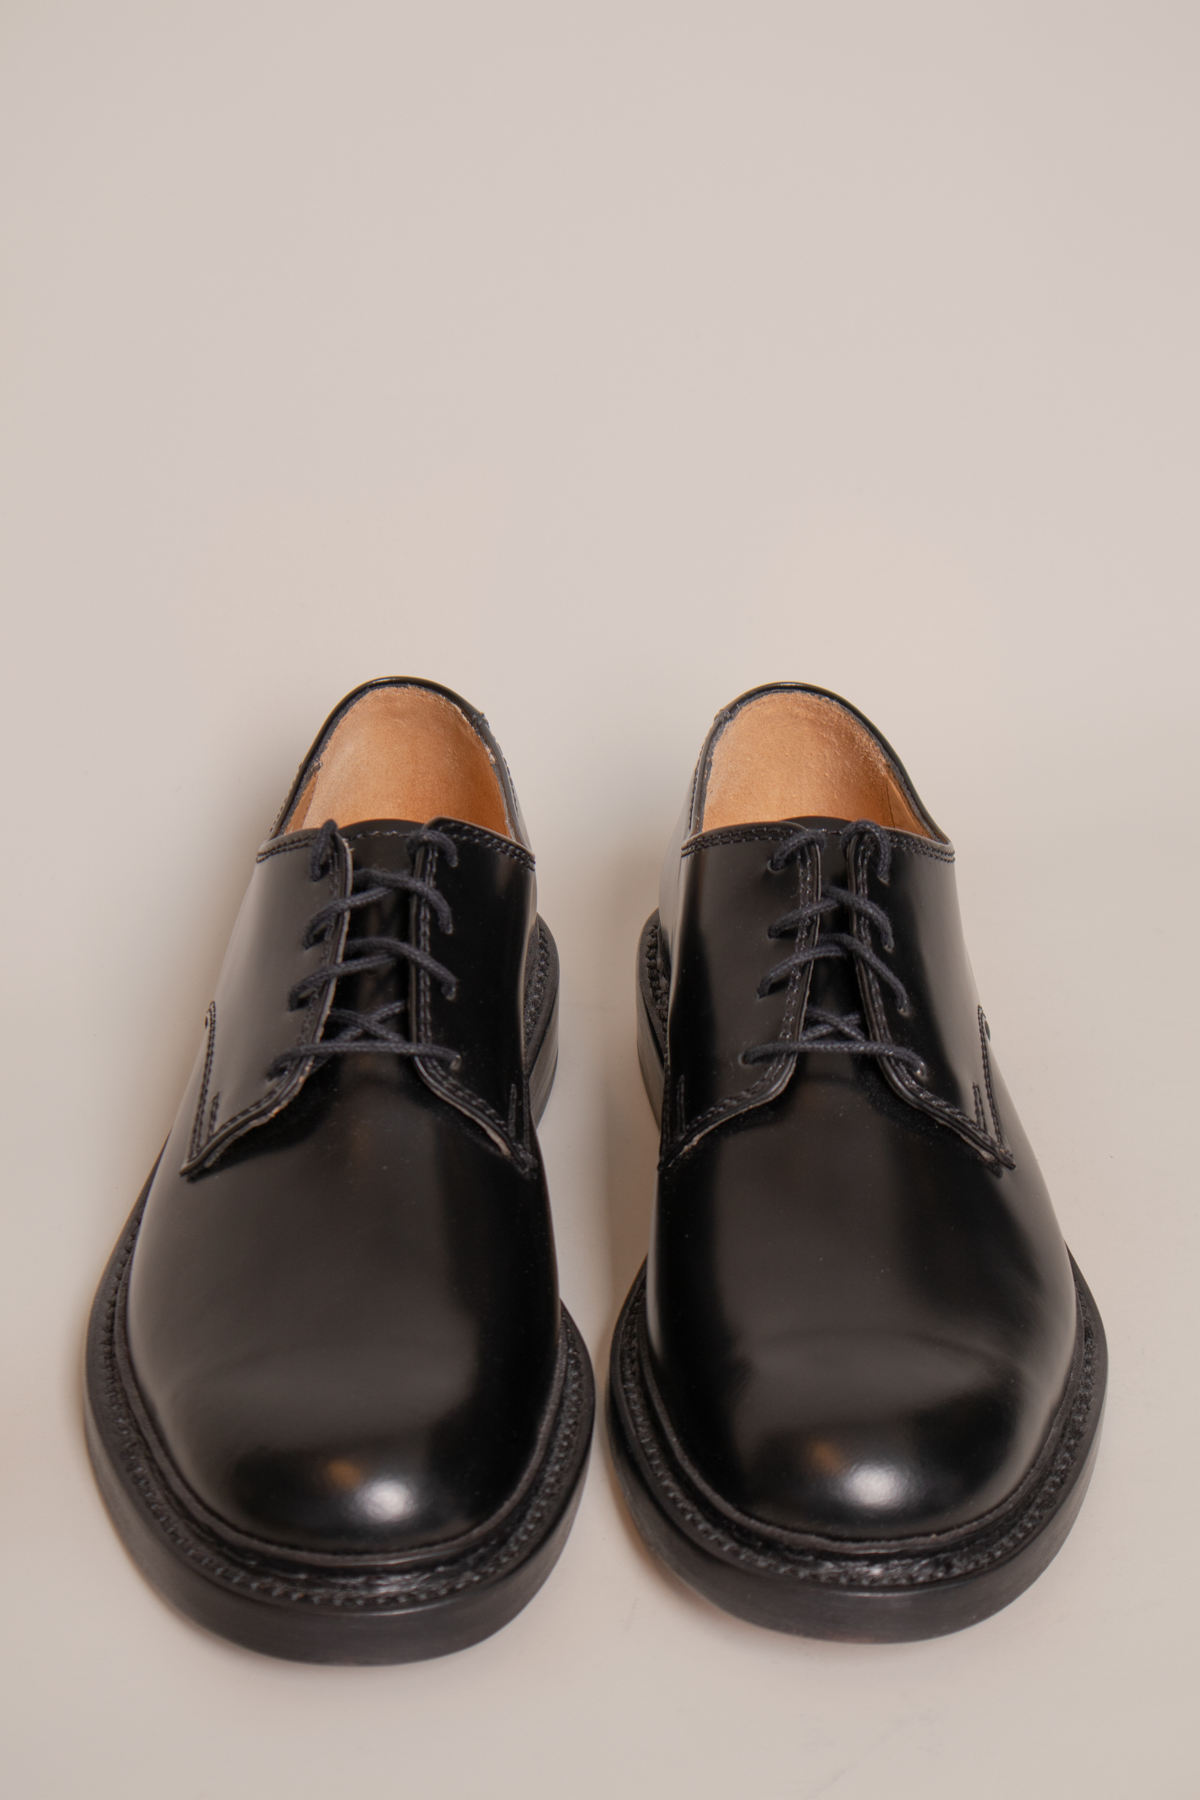 Uniform Parade Shoe Black Leather - Fico Gävle